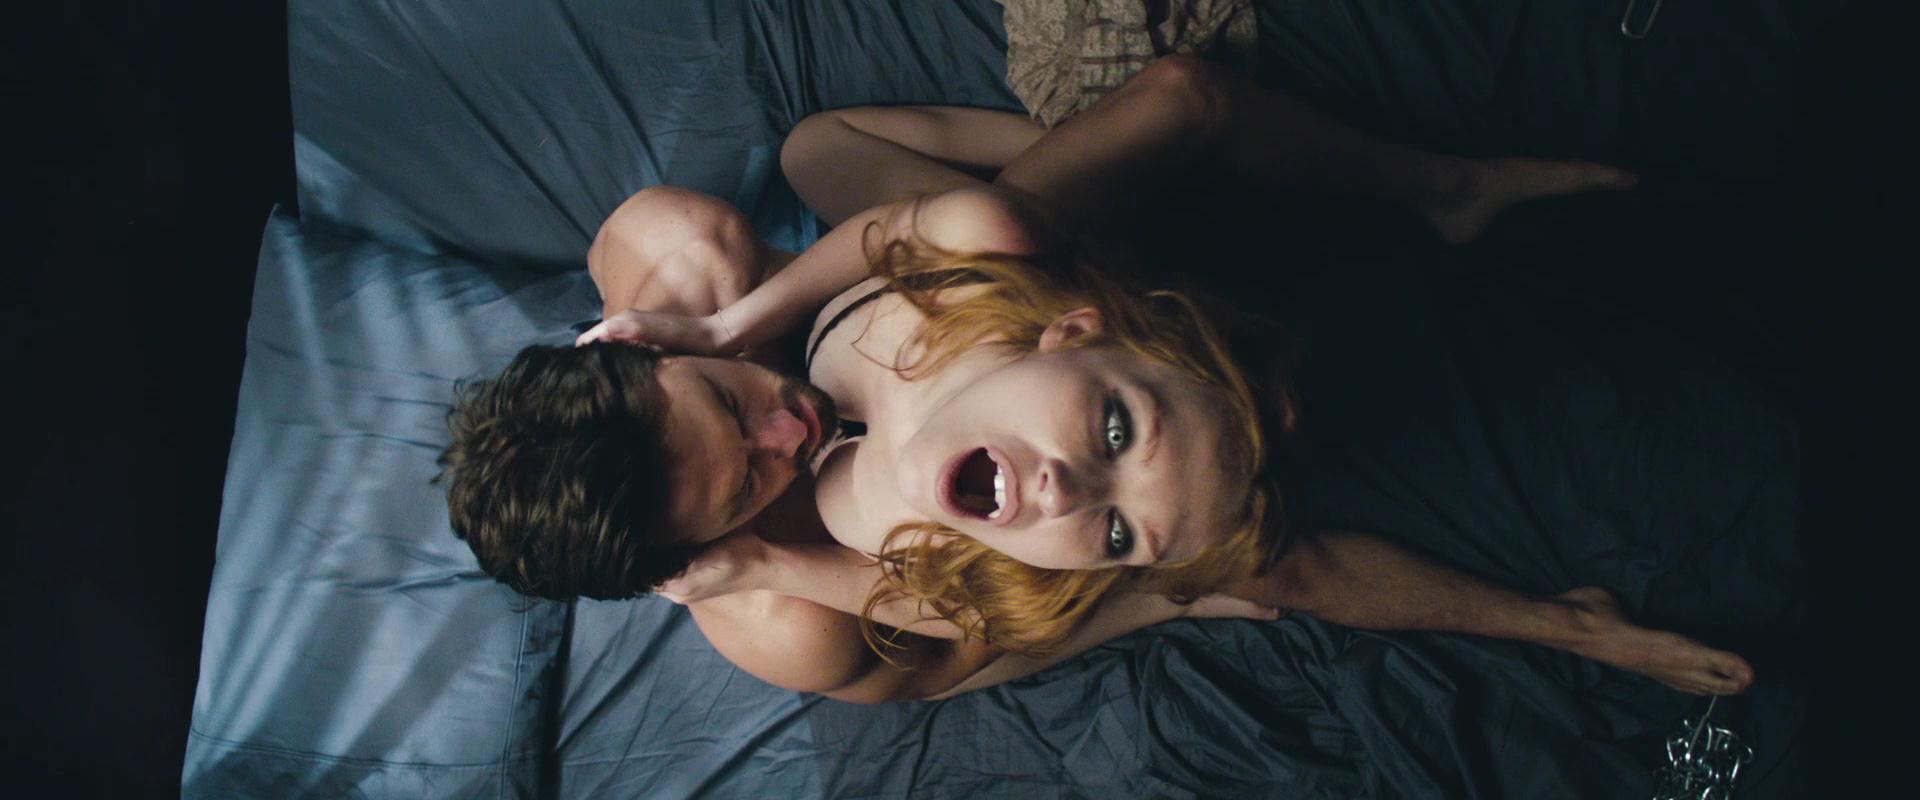 Vampire movie sex scene erotic pics